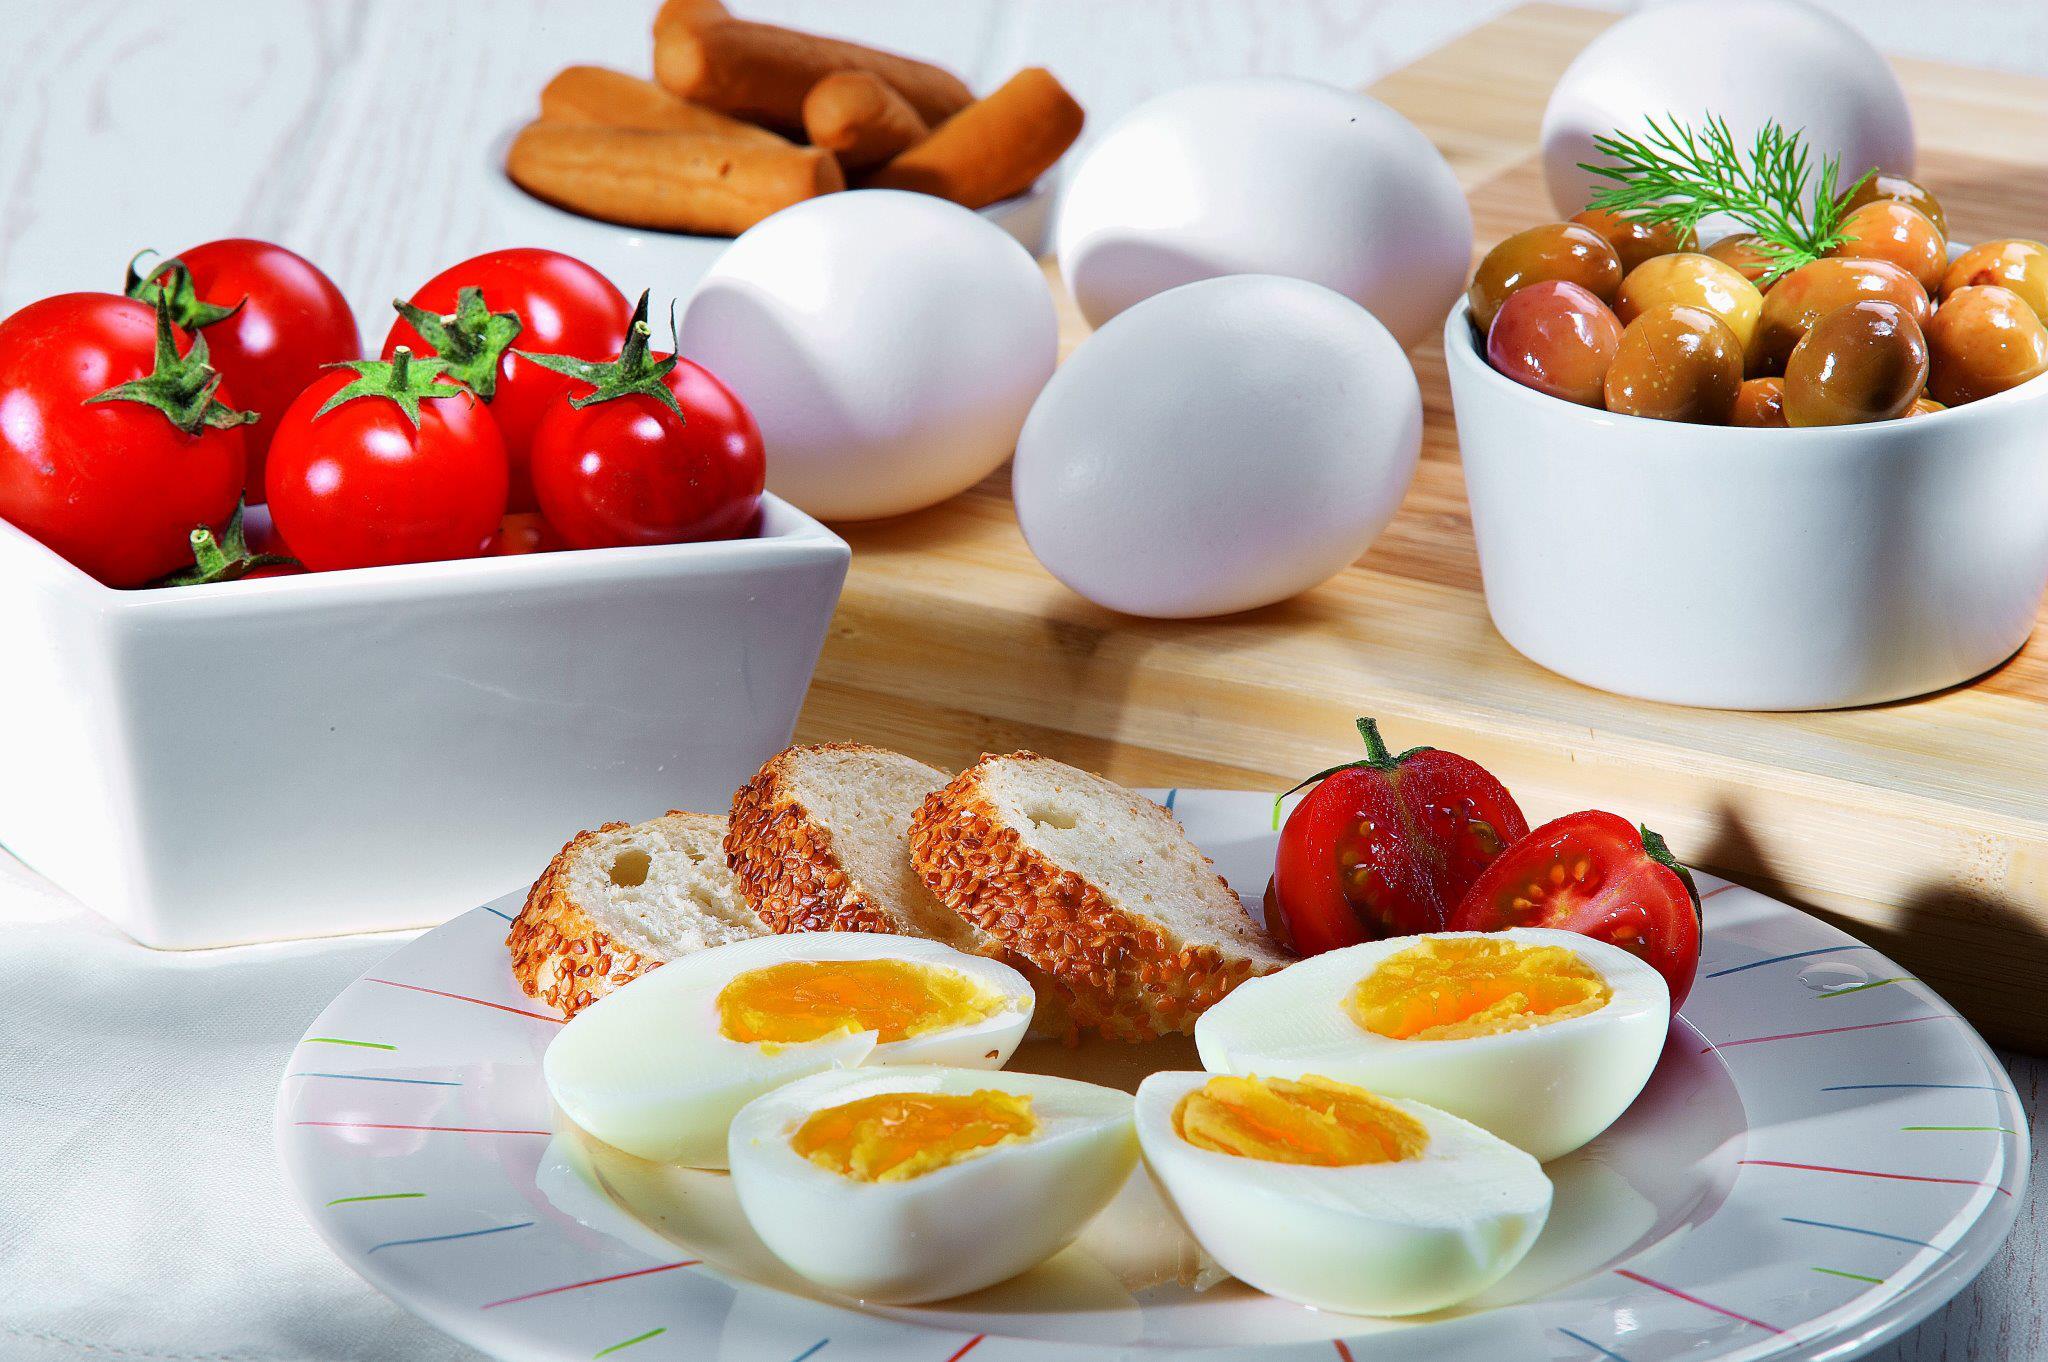 Trứng gà là nguyên liệu quen thuộc có thể được làm thành những món ăn 